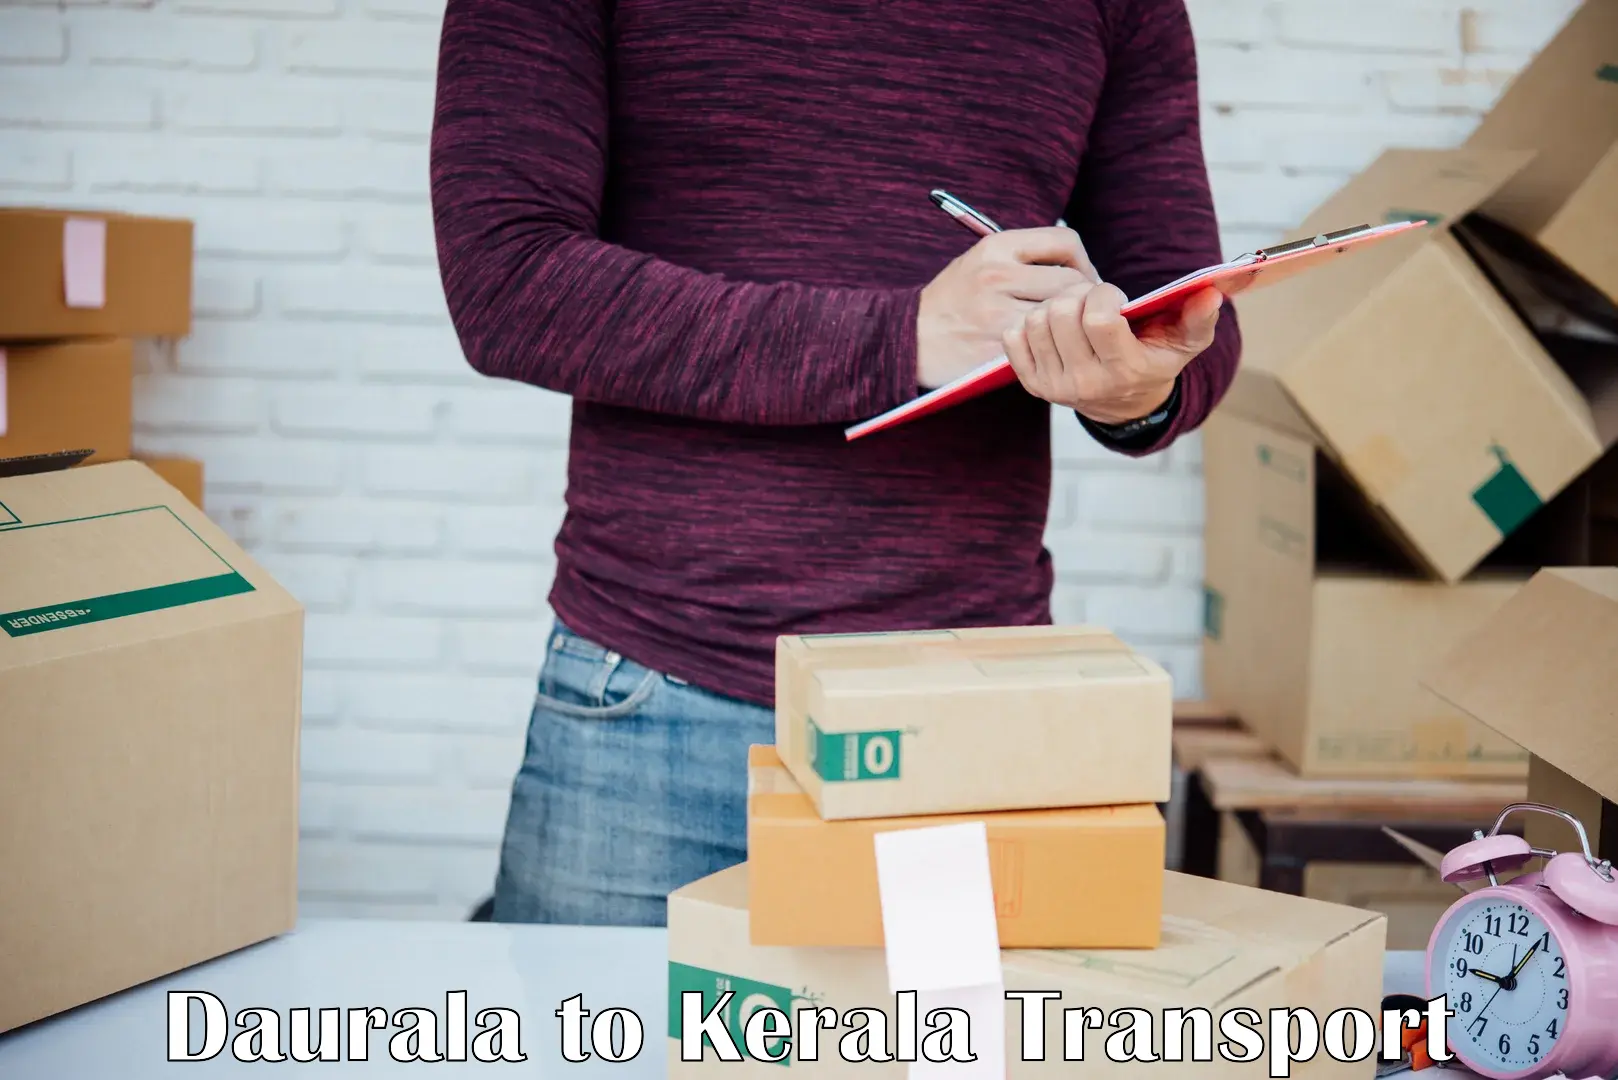 Logistics transportation services Daurala to Kalanjoor